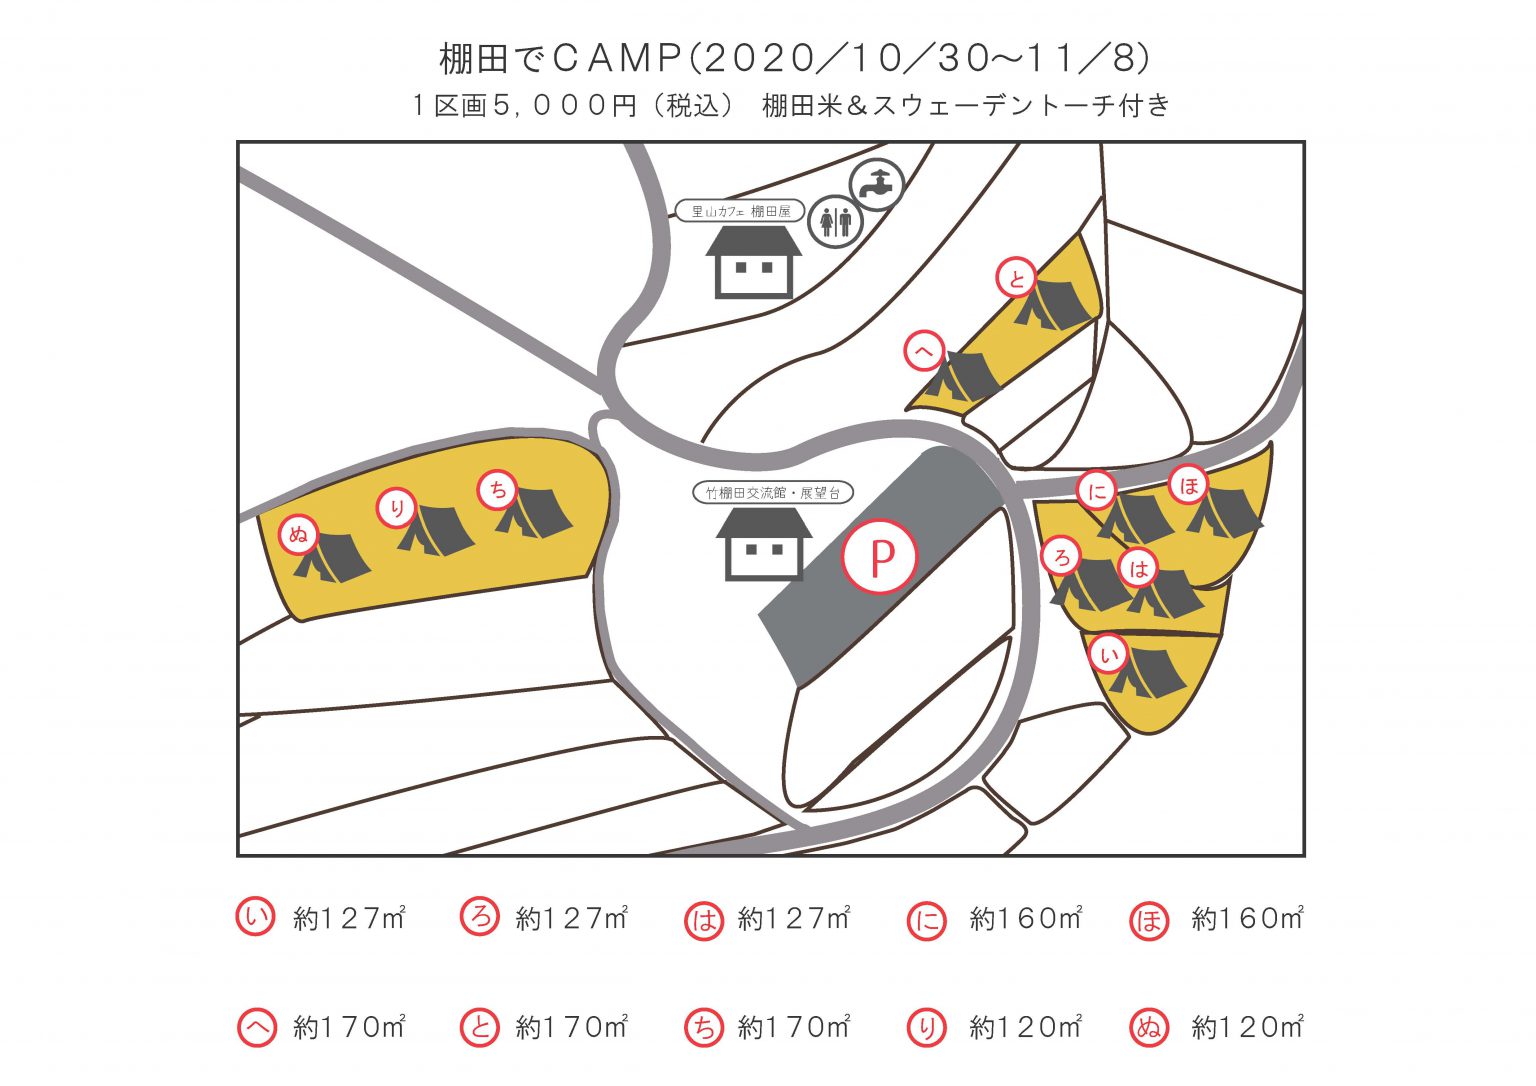 棚田でキャンプ案内-1536x1086.jpg